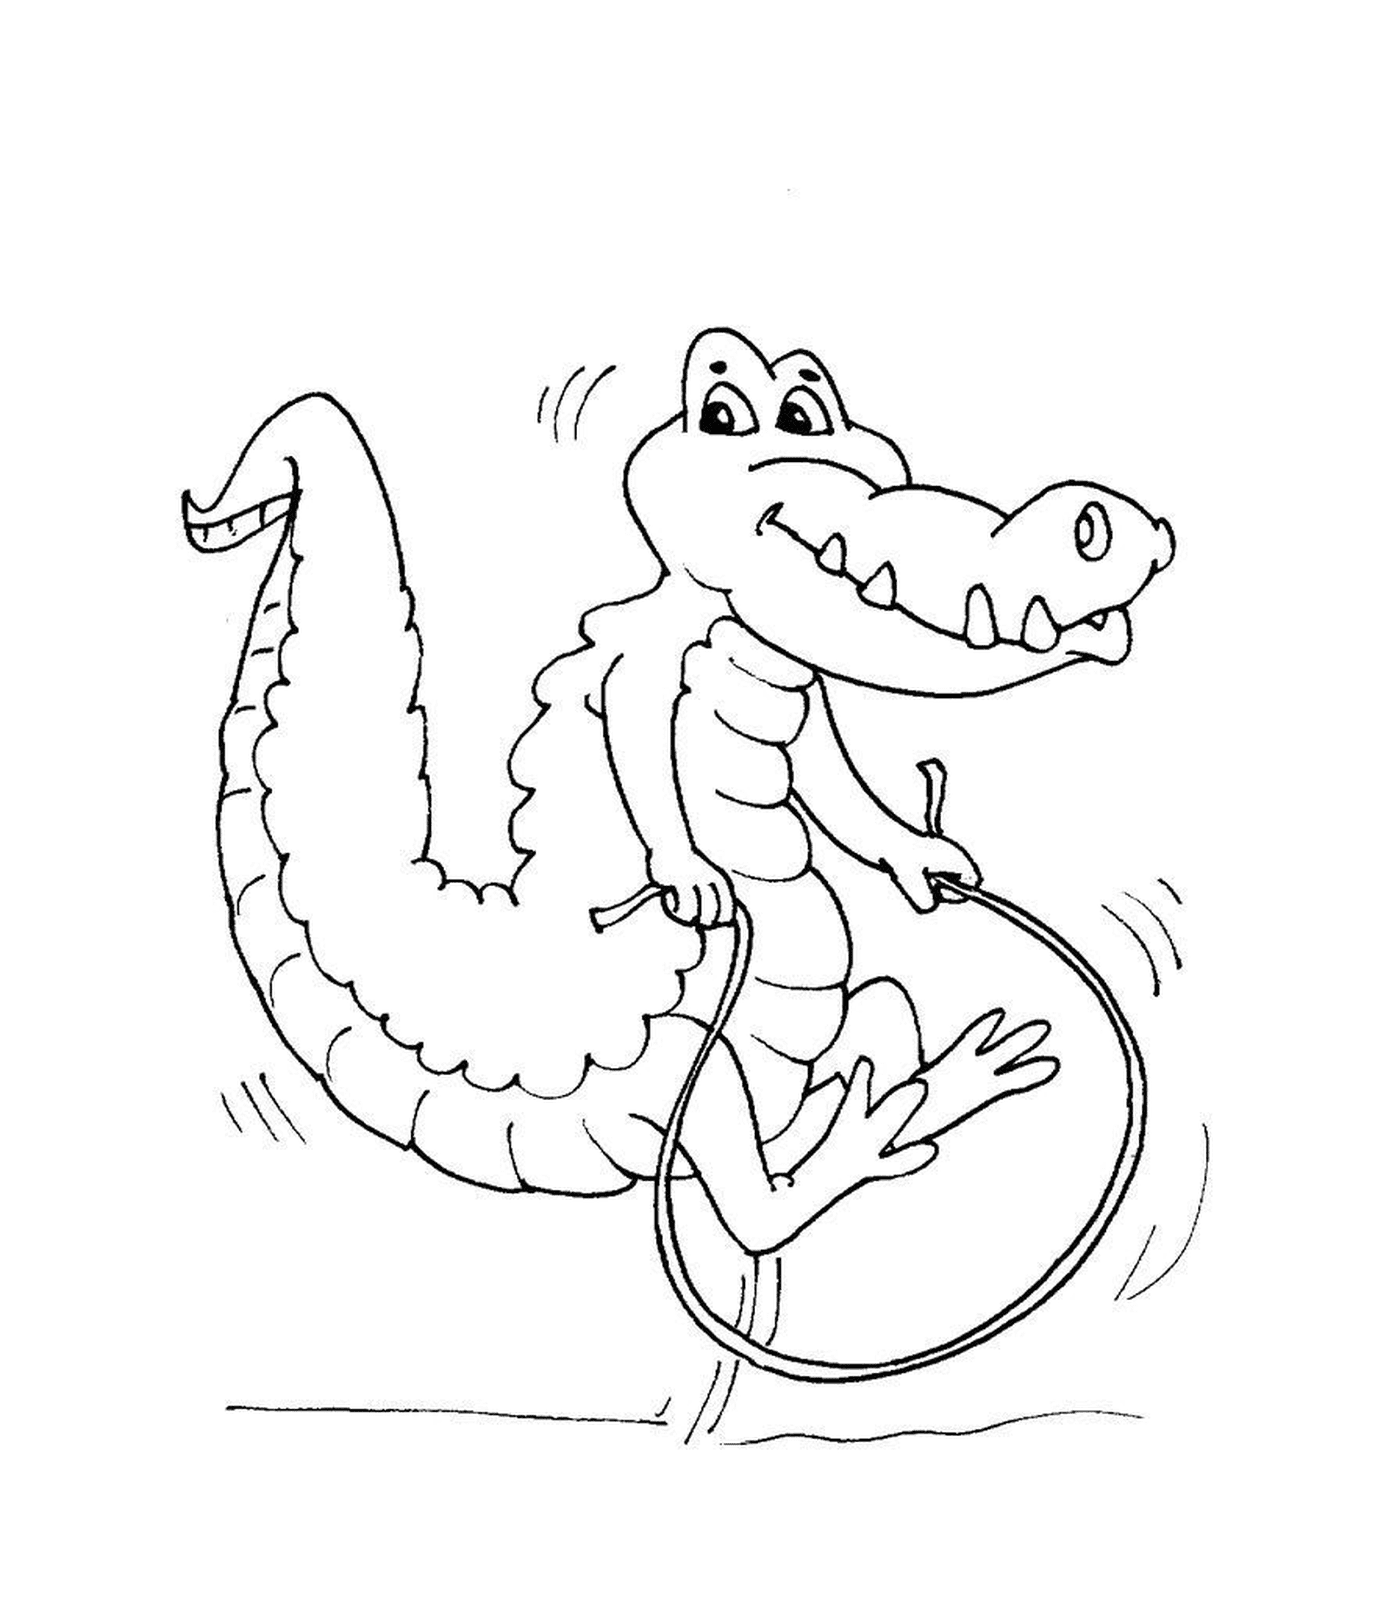  Ein Krokodil-Sprungseil 